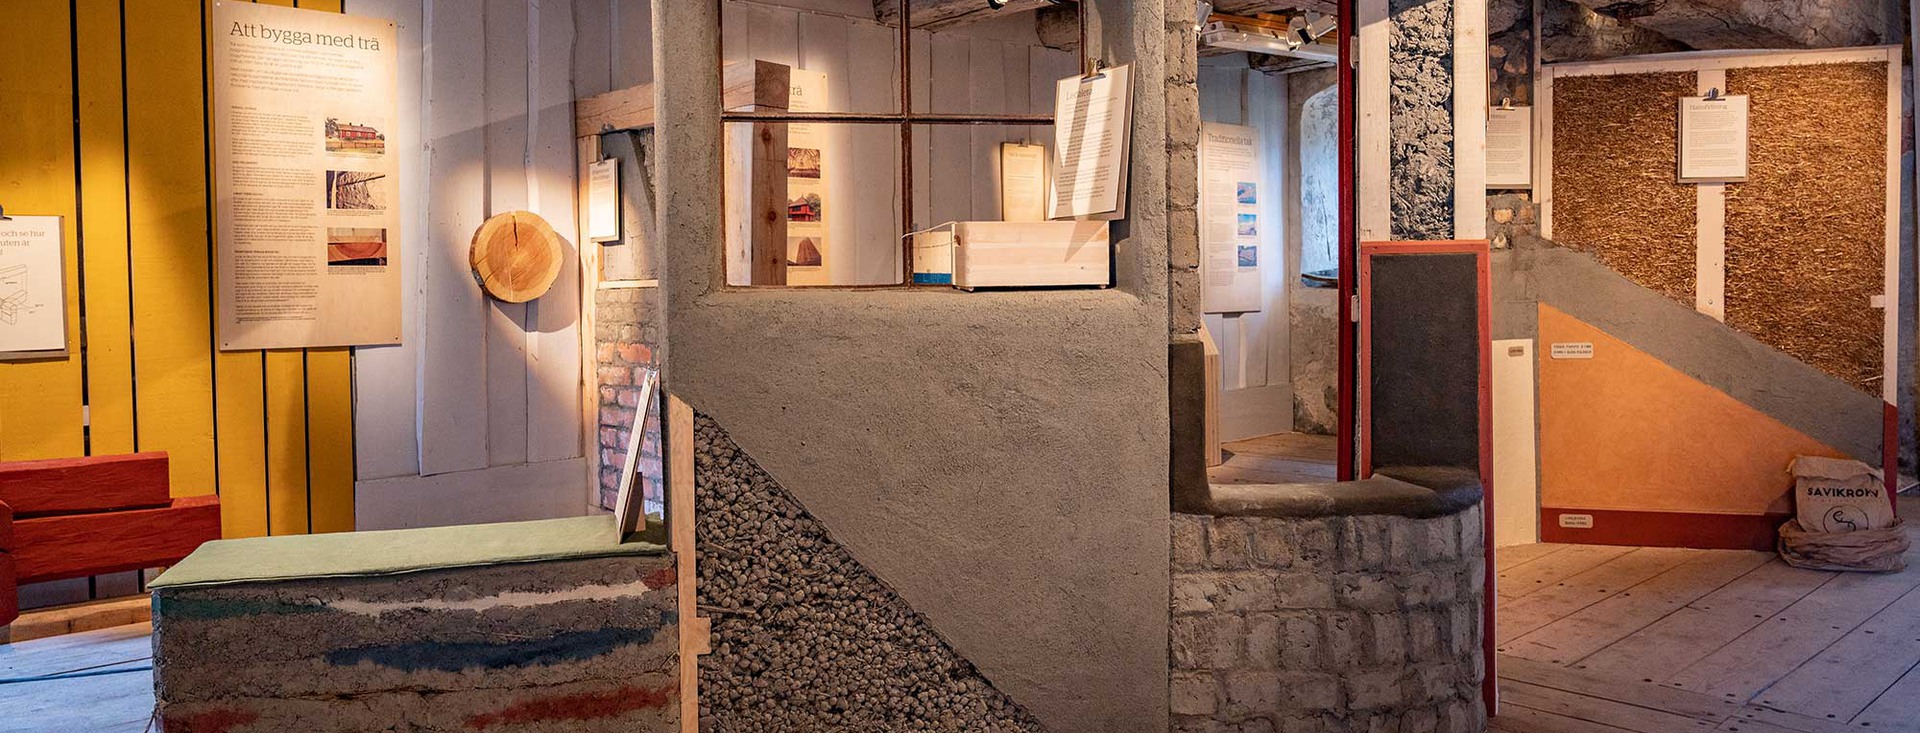 En interiörbild av utställningen Hållbara hus med lerväggar och linoljefärgade väggar.